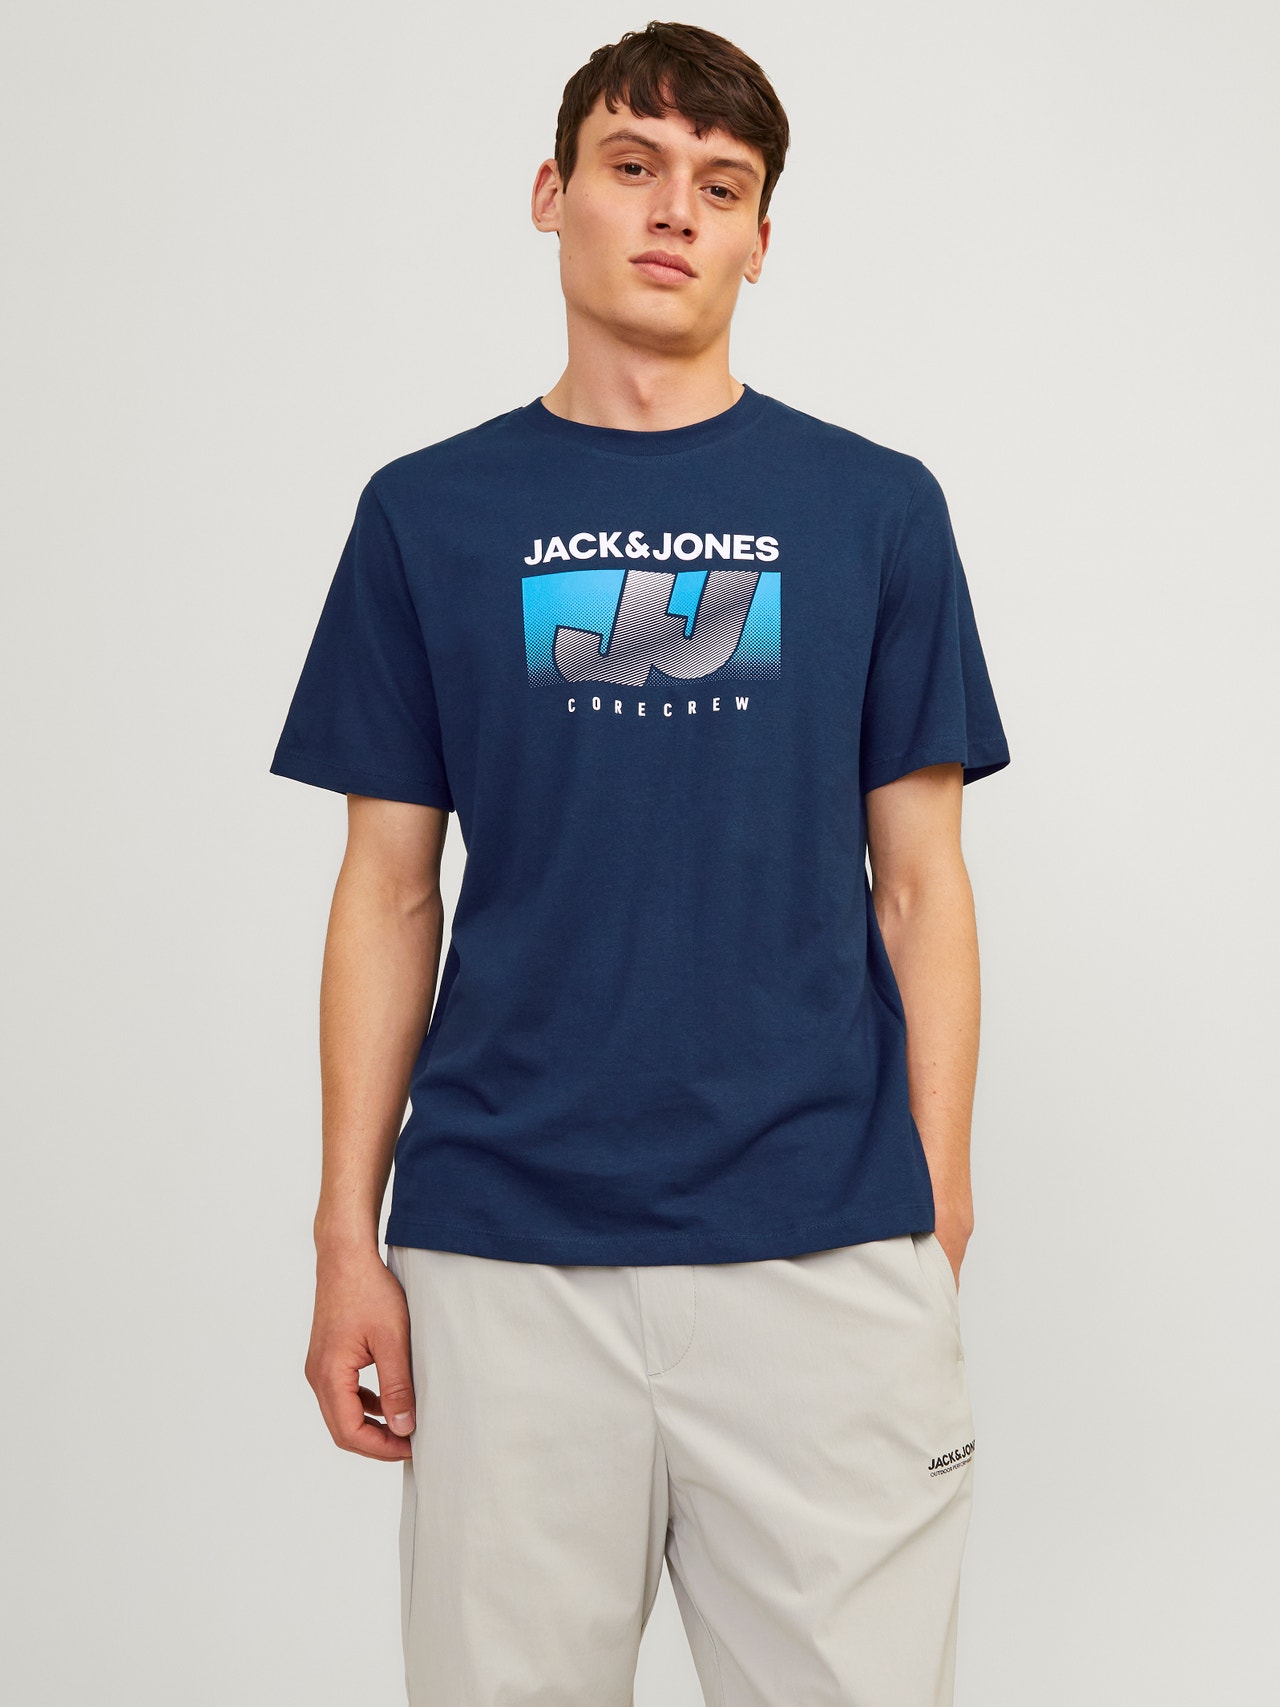 Jack & Jones T-shirt Imprimé Col rond -Navy Blazer - 12255028